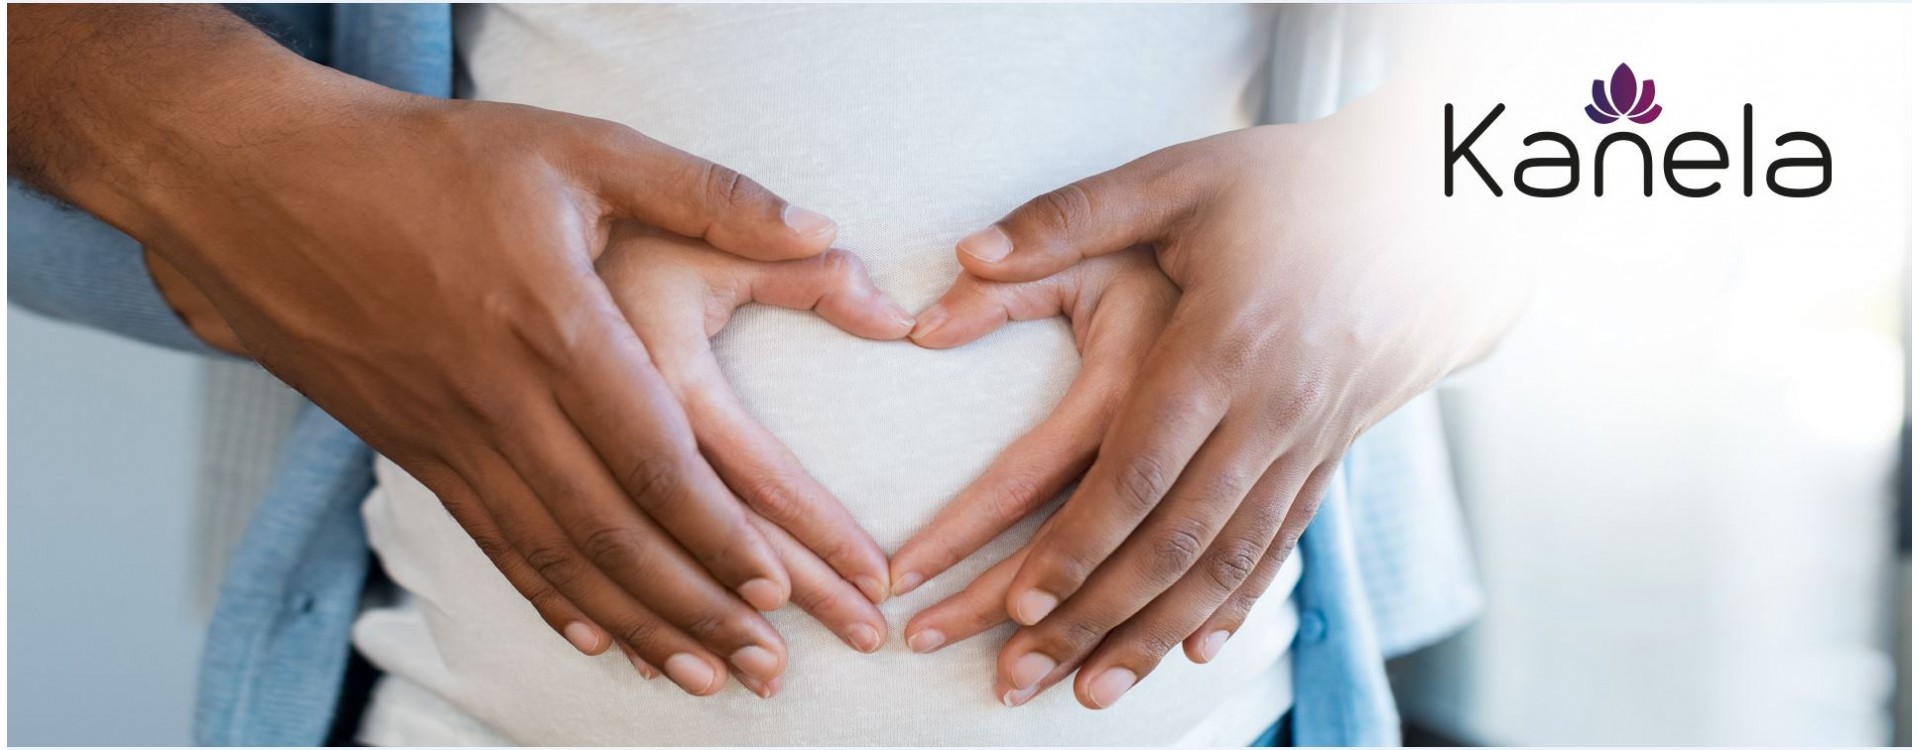 Kinderwunsch - was hilft um endlich schwanger zu werden?